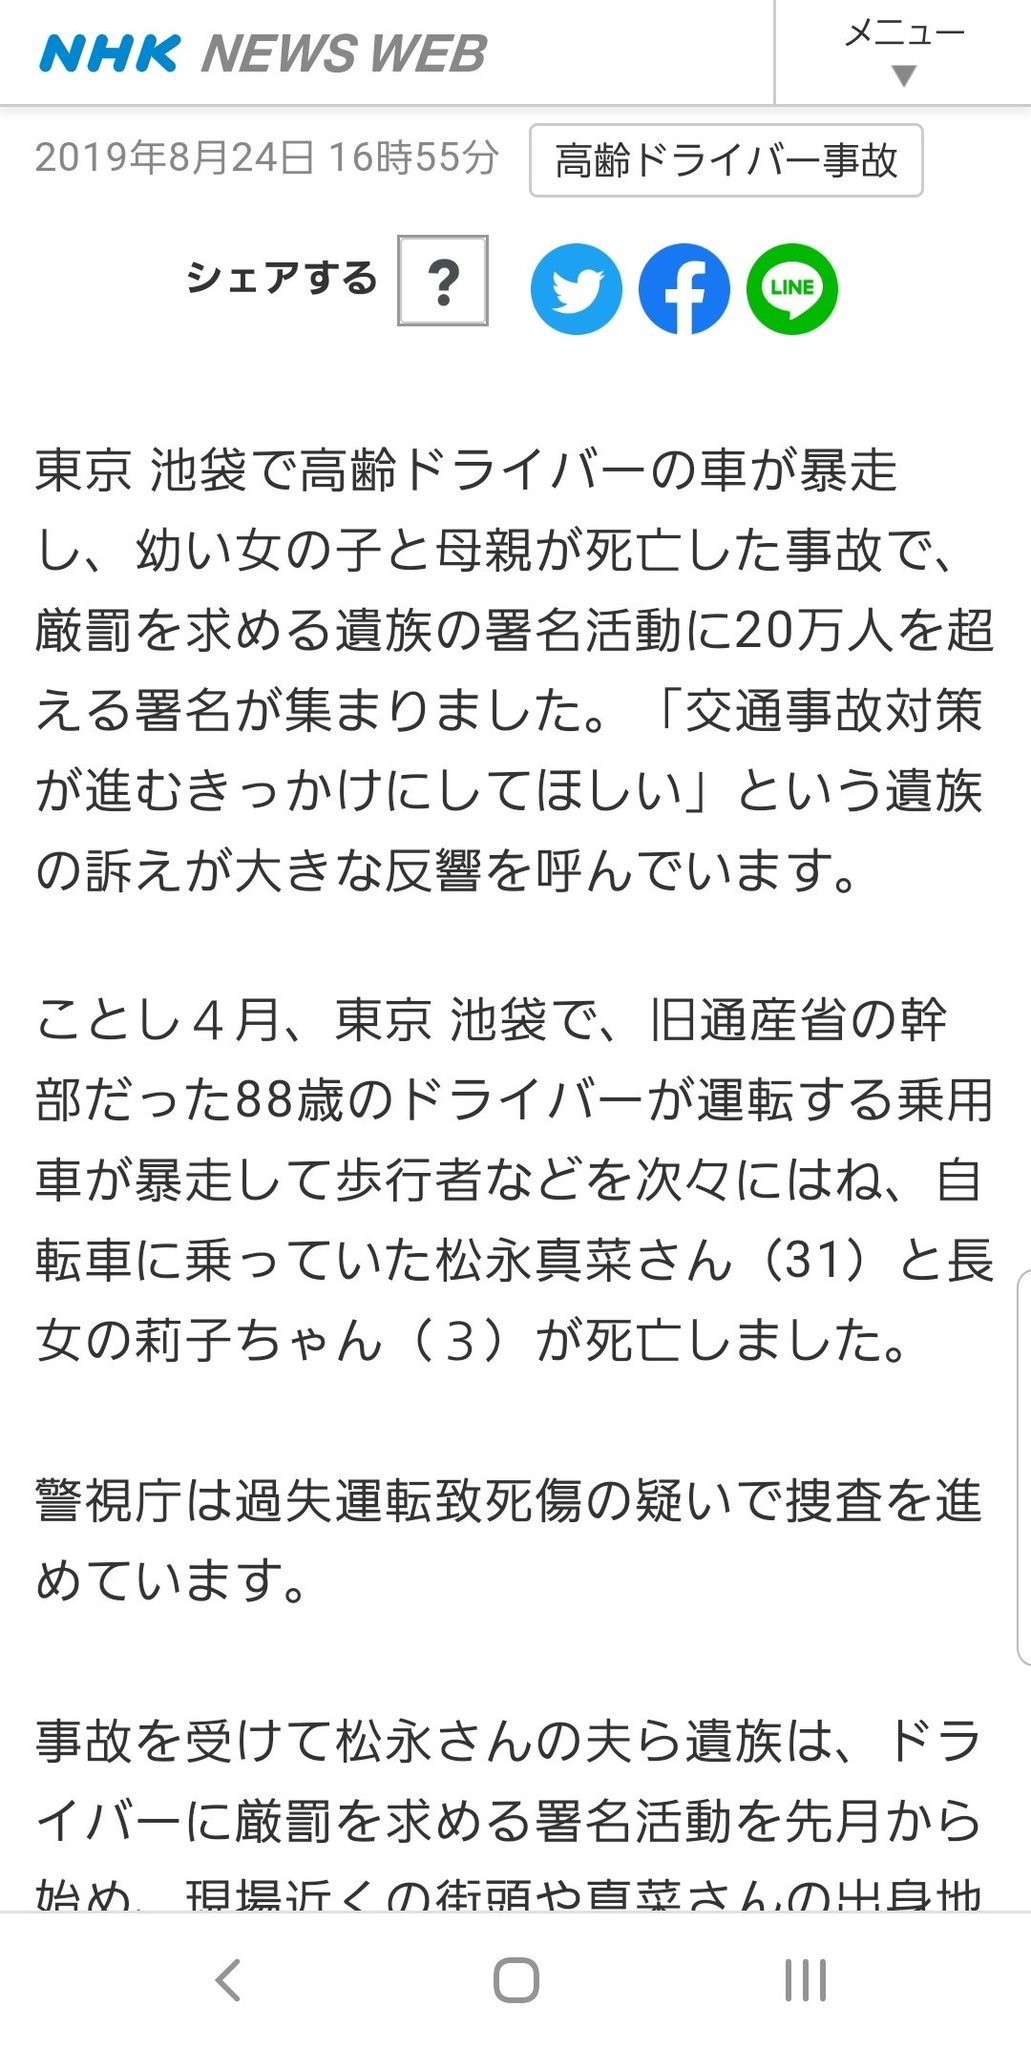 NHK “I am sorry to report the news that Kozo Iizuka murdered and killed me, so I ’ll lay down my name.”